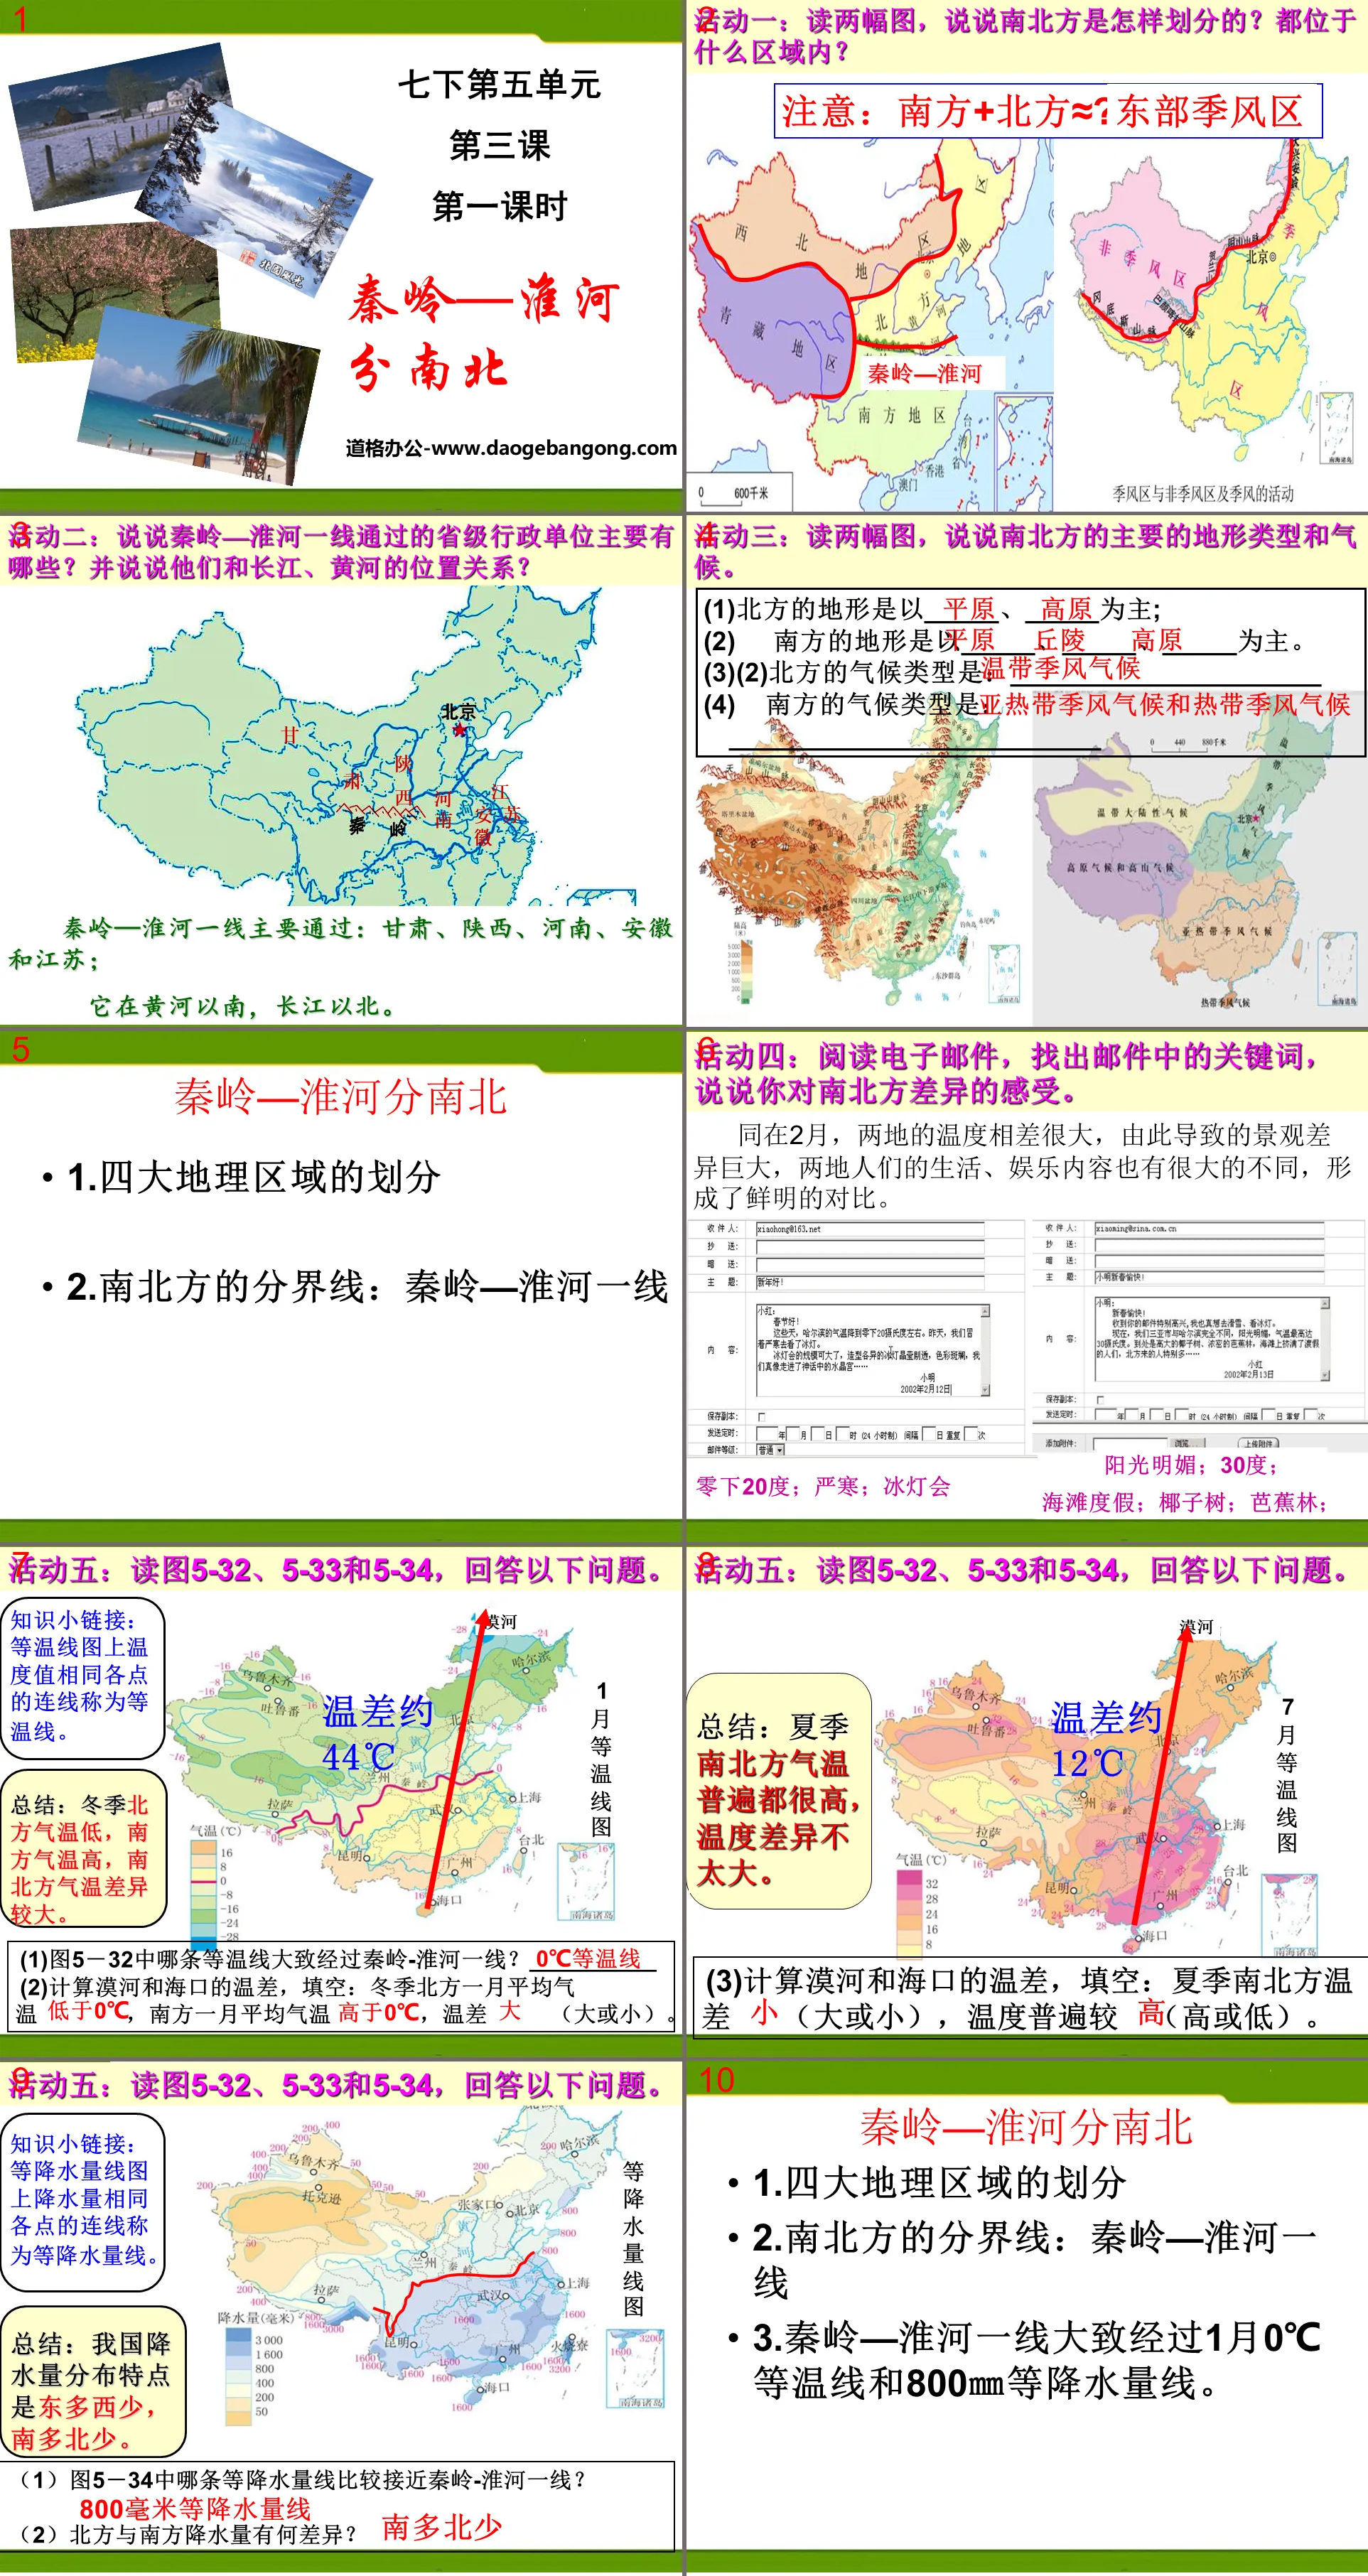 《秦嶺--淮河分南北》中華各族人民的家園PPT課程